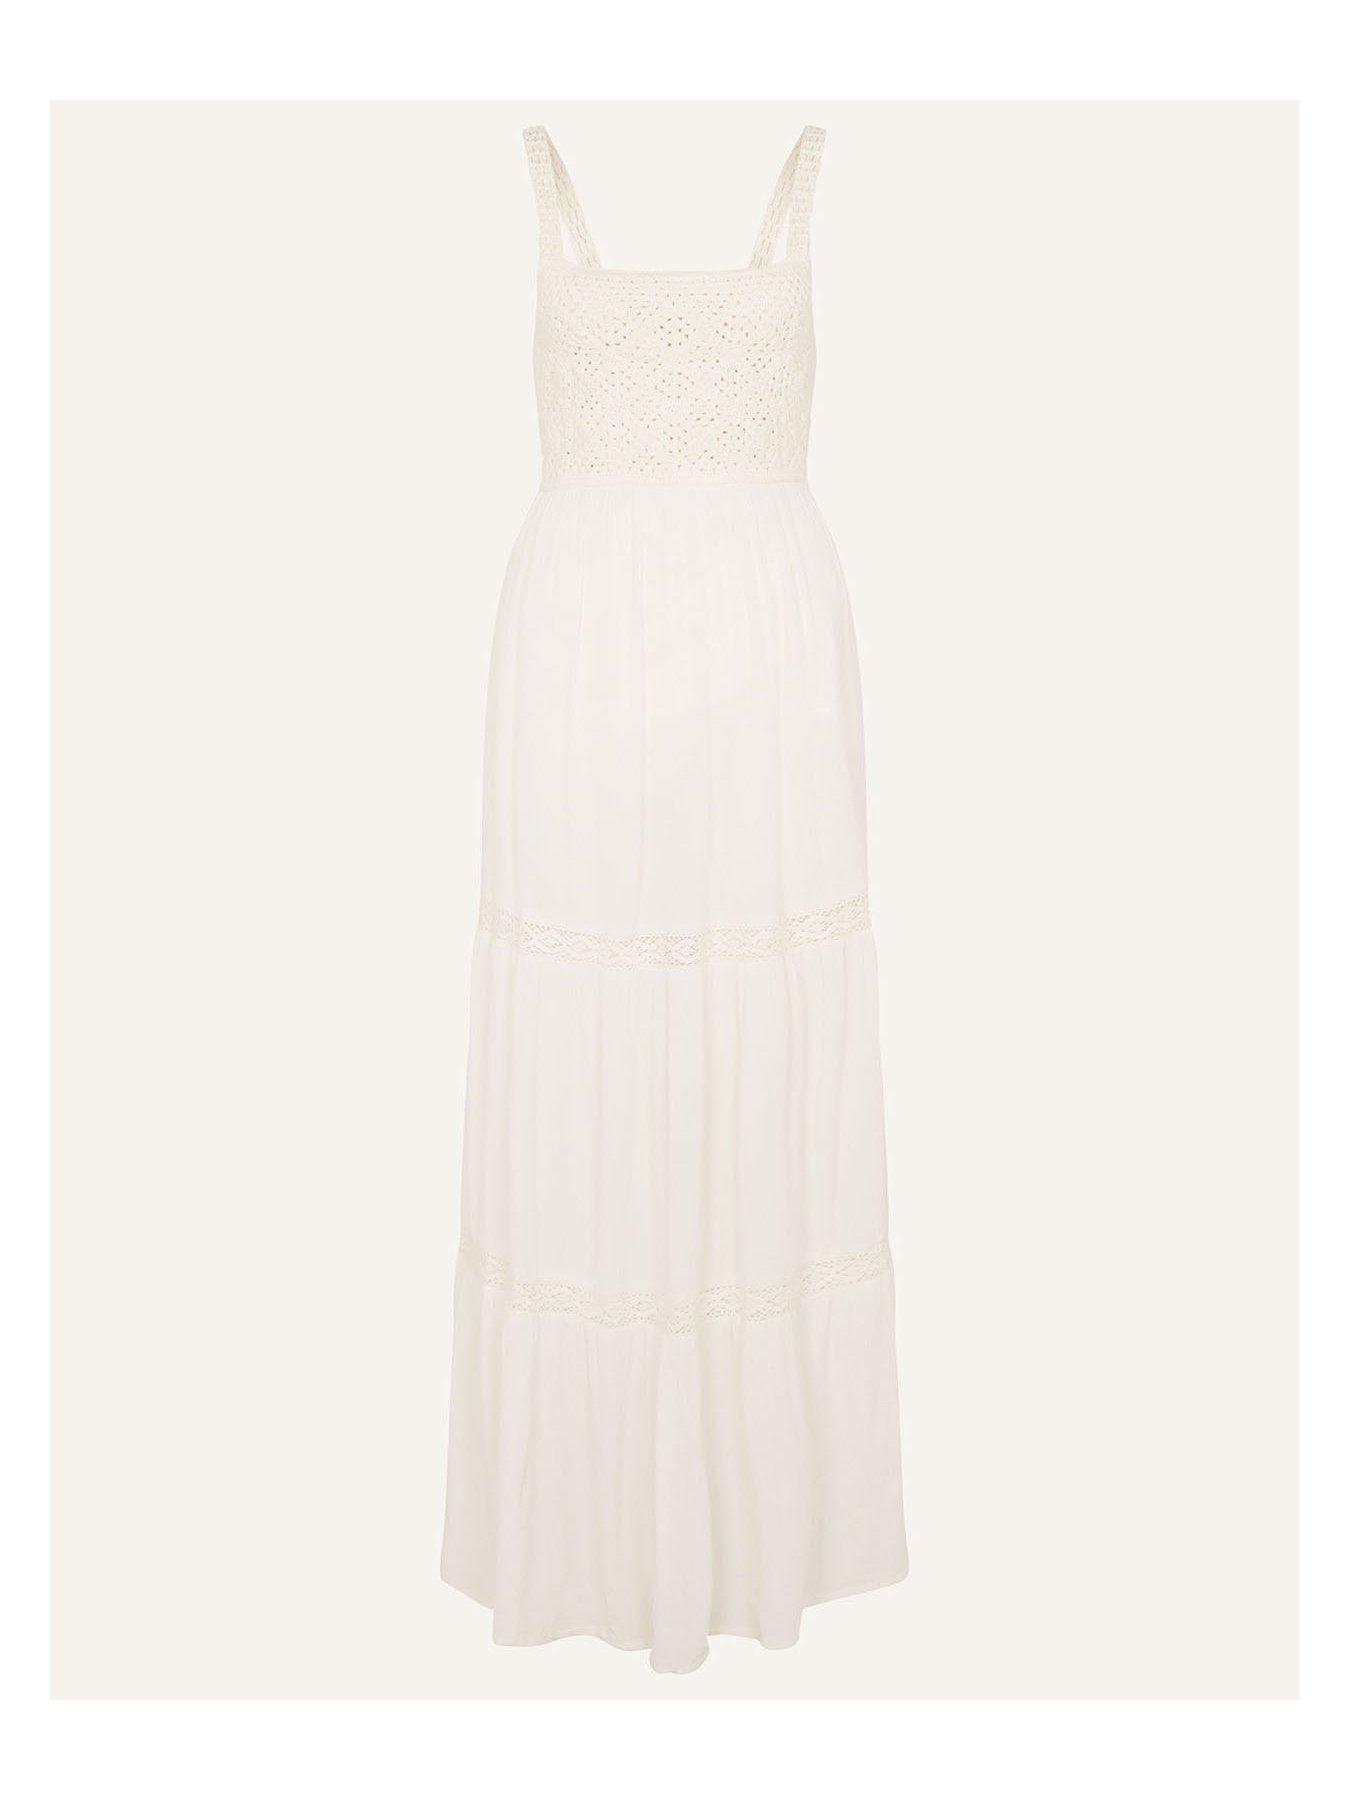 White Crochet Top Dress